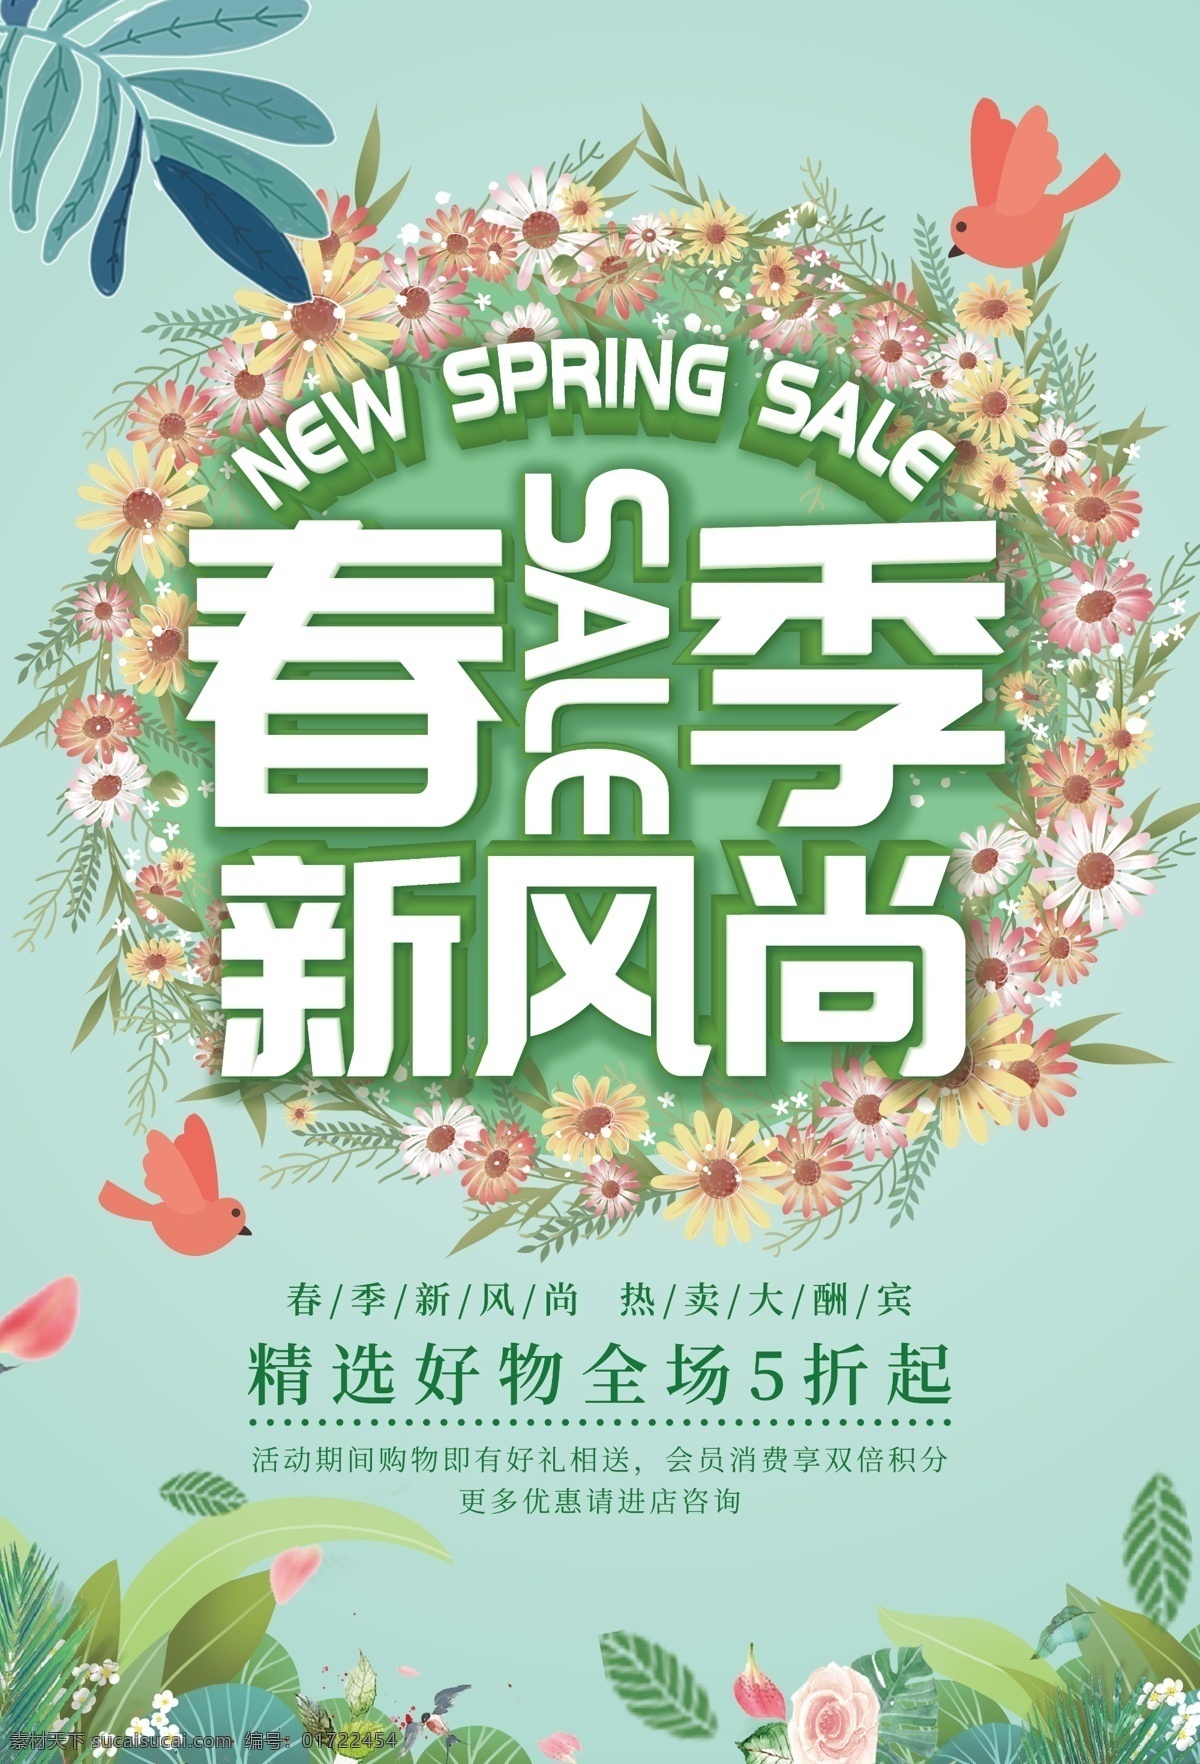 春季 新 风尚 热卖 新风尚 促销 绿色海报 海报素材